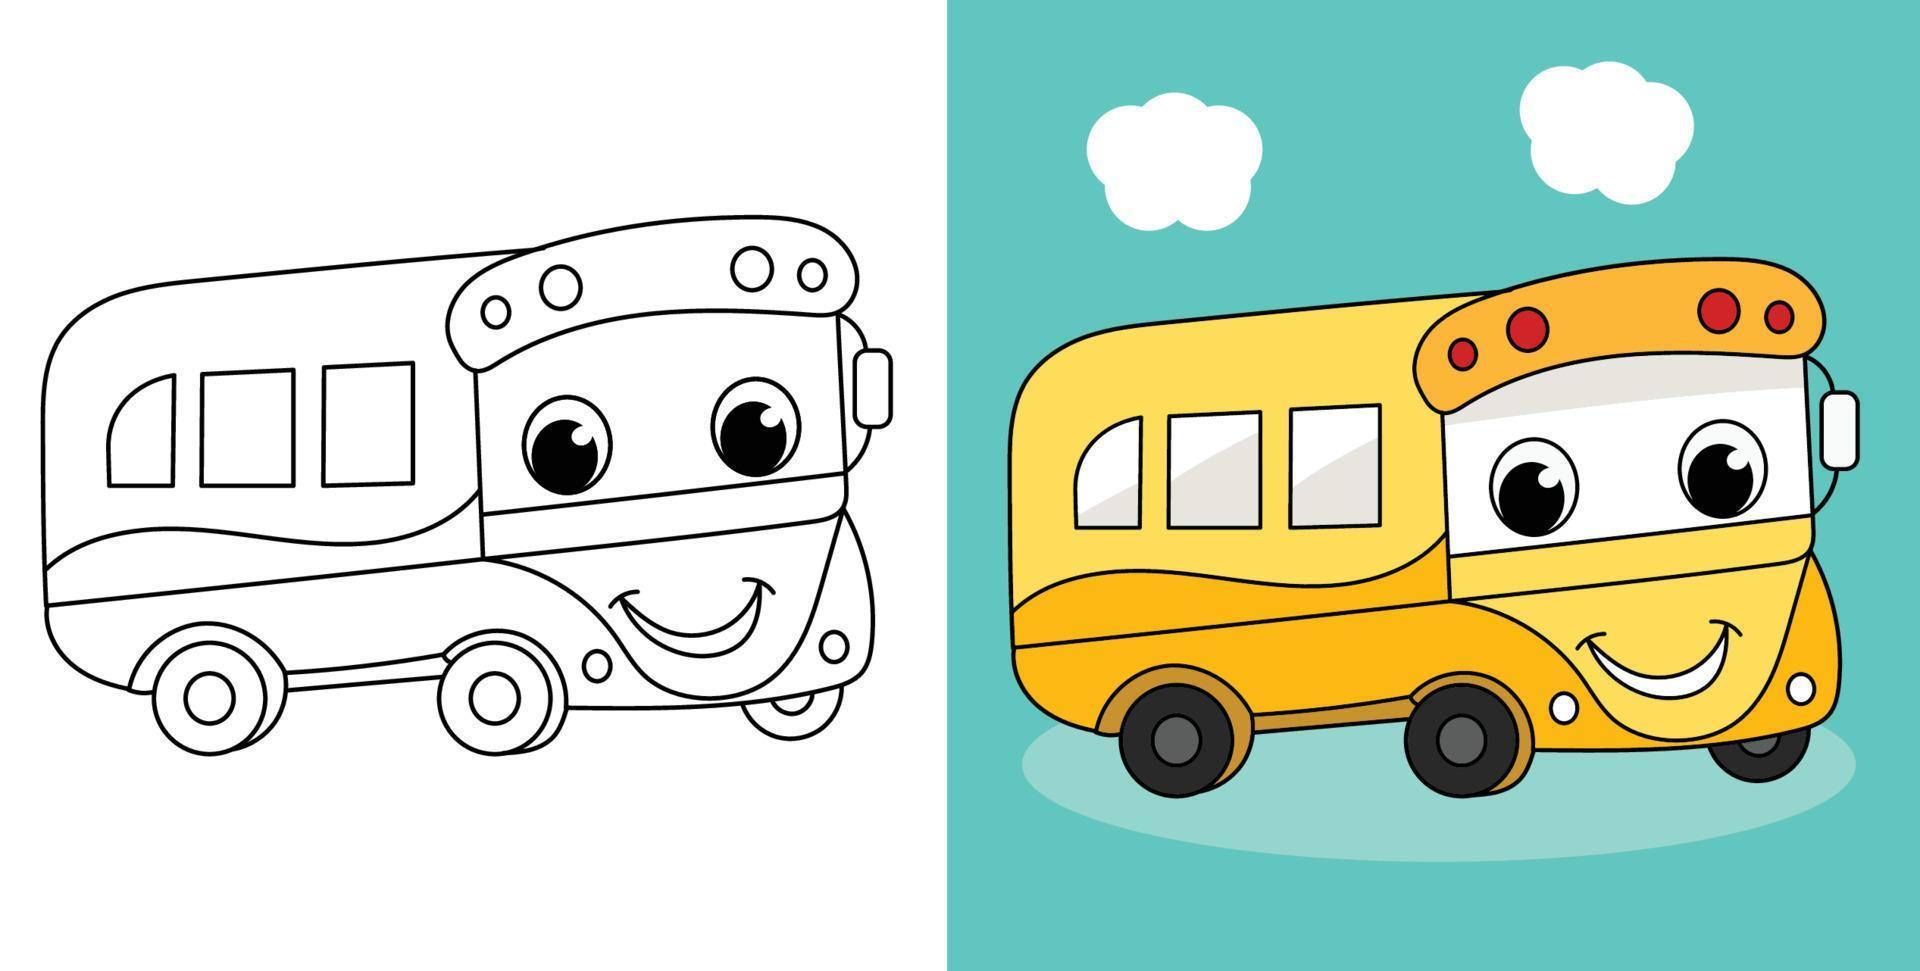 veículo de contorno desenhado à mão ilustração de ônibus escolar bonito vetor de personagem de desenho animado página para colorir para crianças